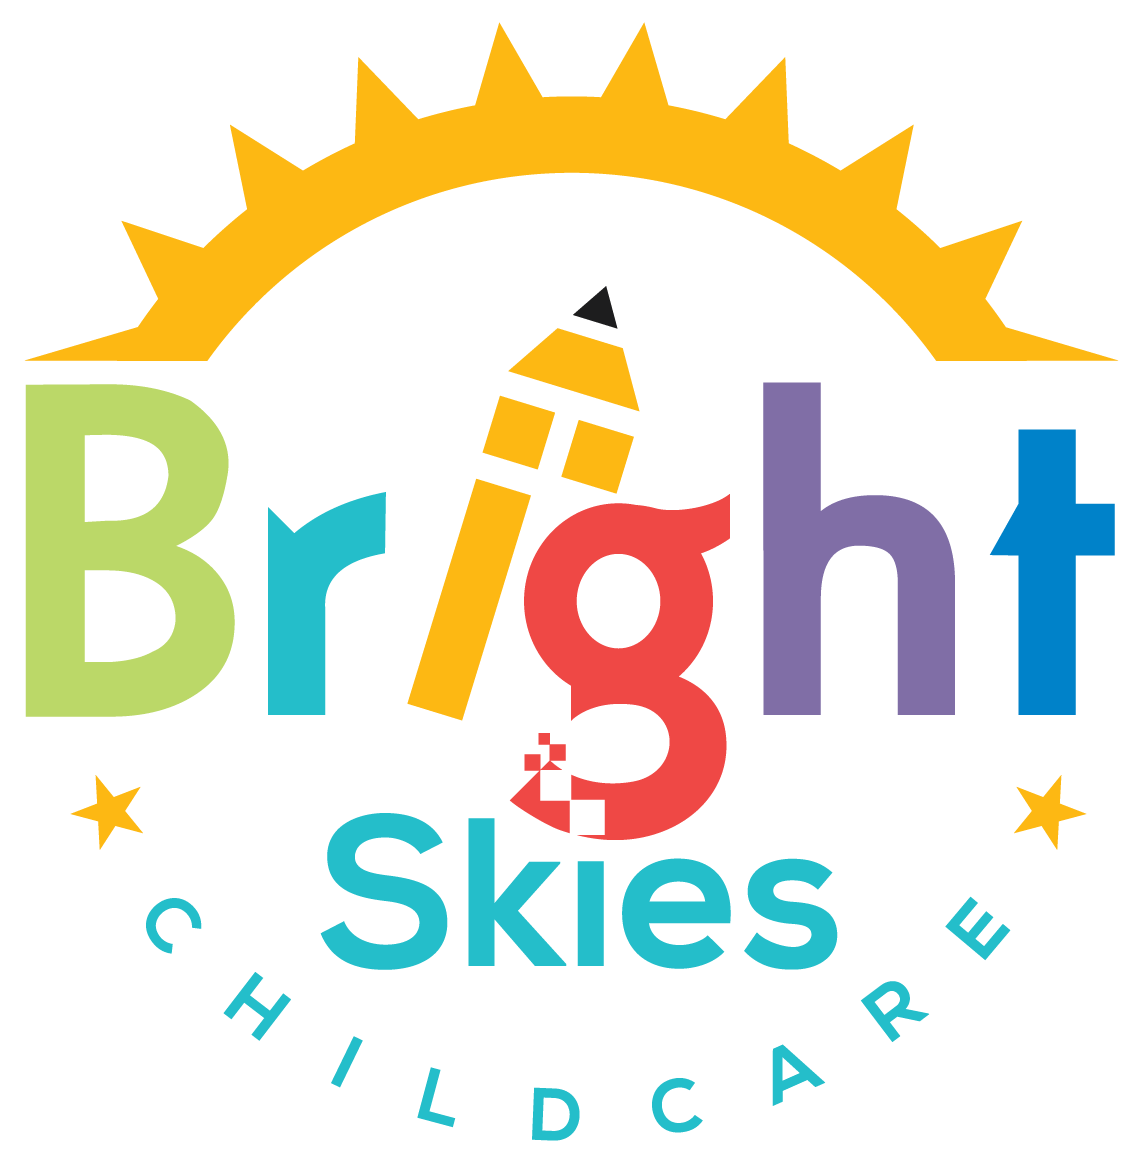 BRIGHT SKIES CHILDCARE, LLC